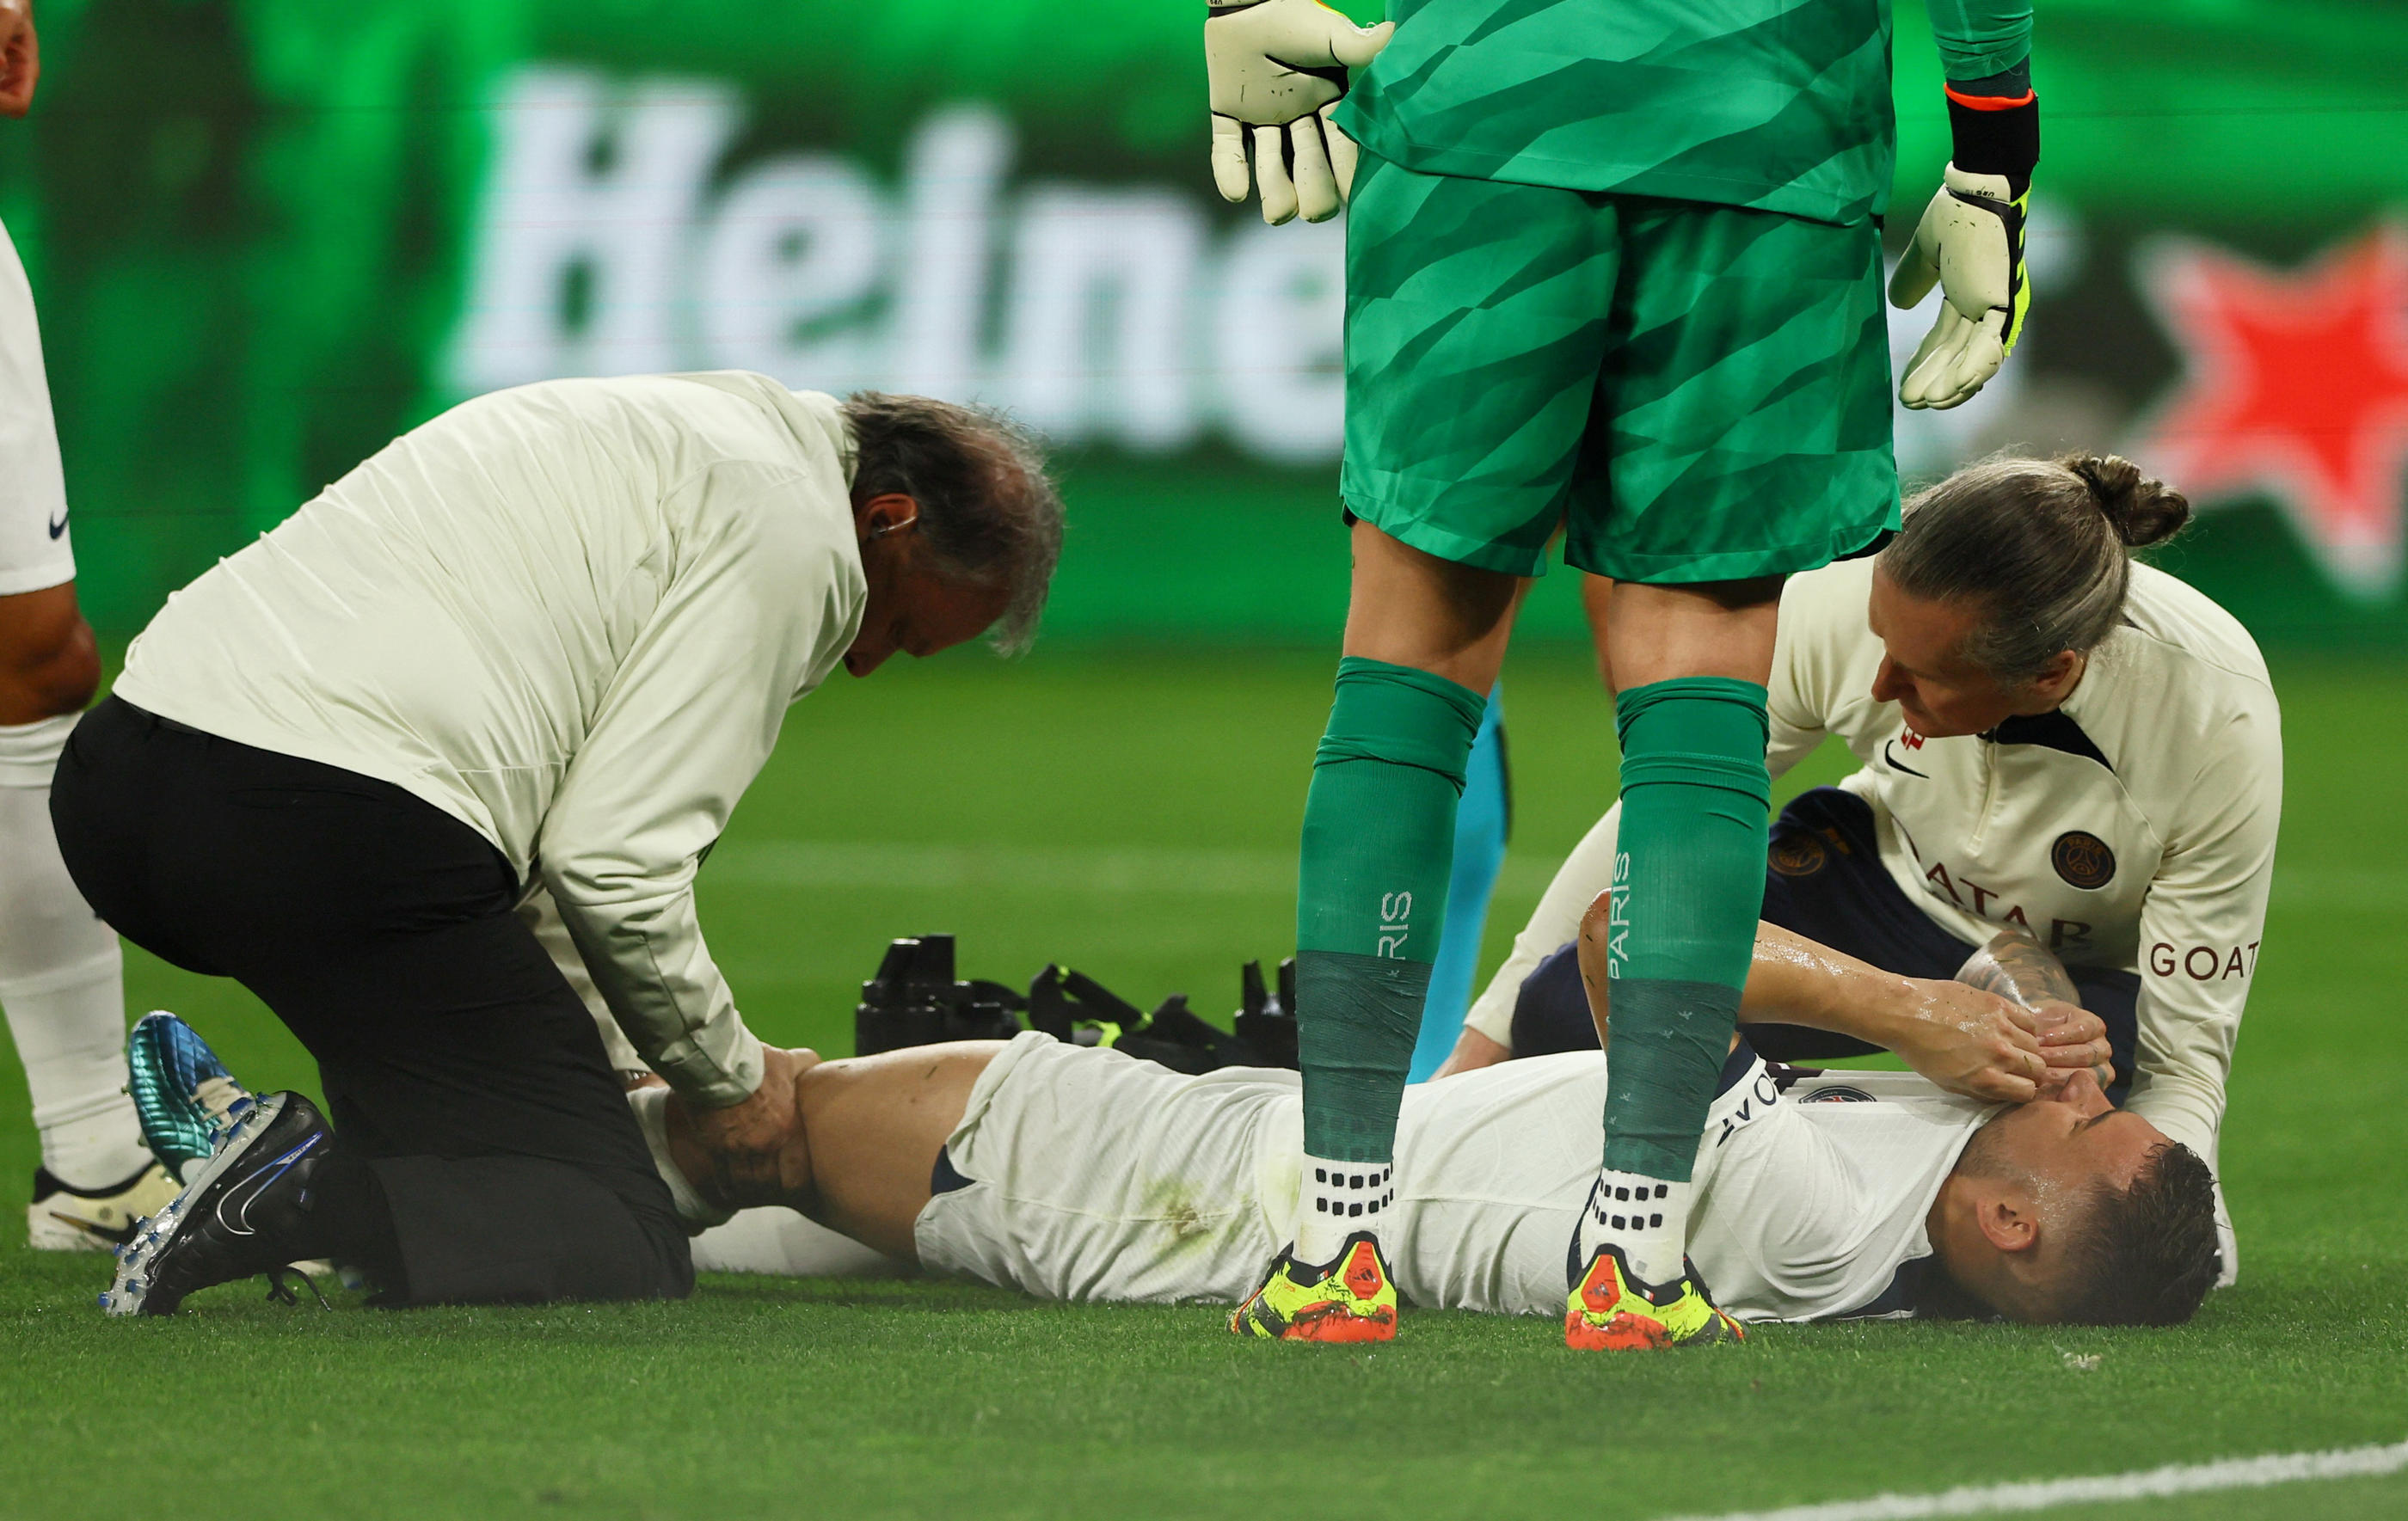 Le défenseur du Paris Saint-Germain Lucas Hernandez, sorti sur blessure mercredi contre Dortmund, "souffre d'une rupture du ligament croisé antérieur du genou gauche" et se dirige vers un forfait pour l'Euro en juin, a annoncé jeudi le club parisien. REUTERS/Thilo Schmuelgen